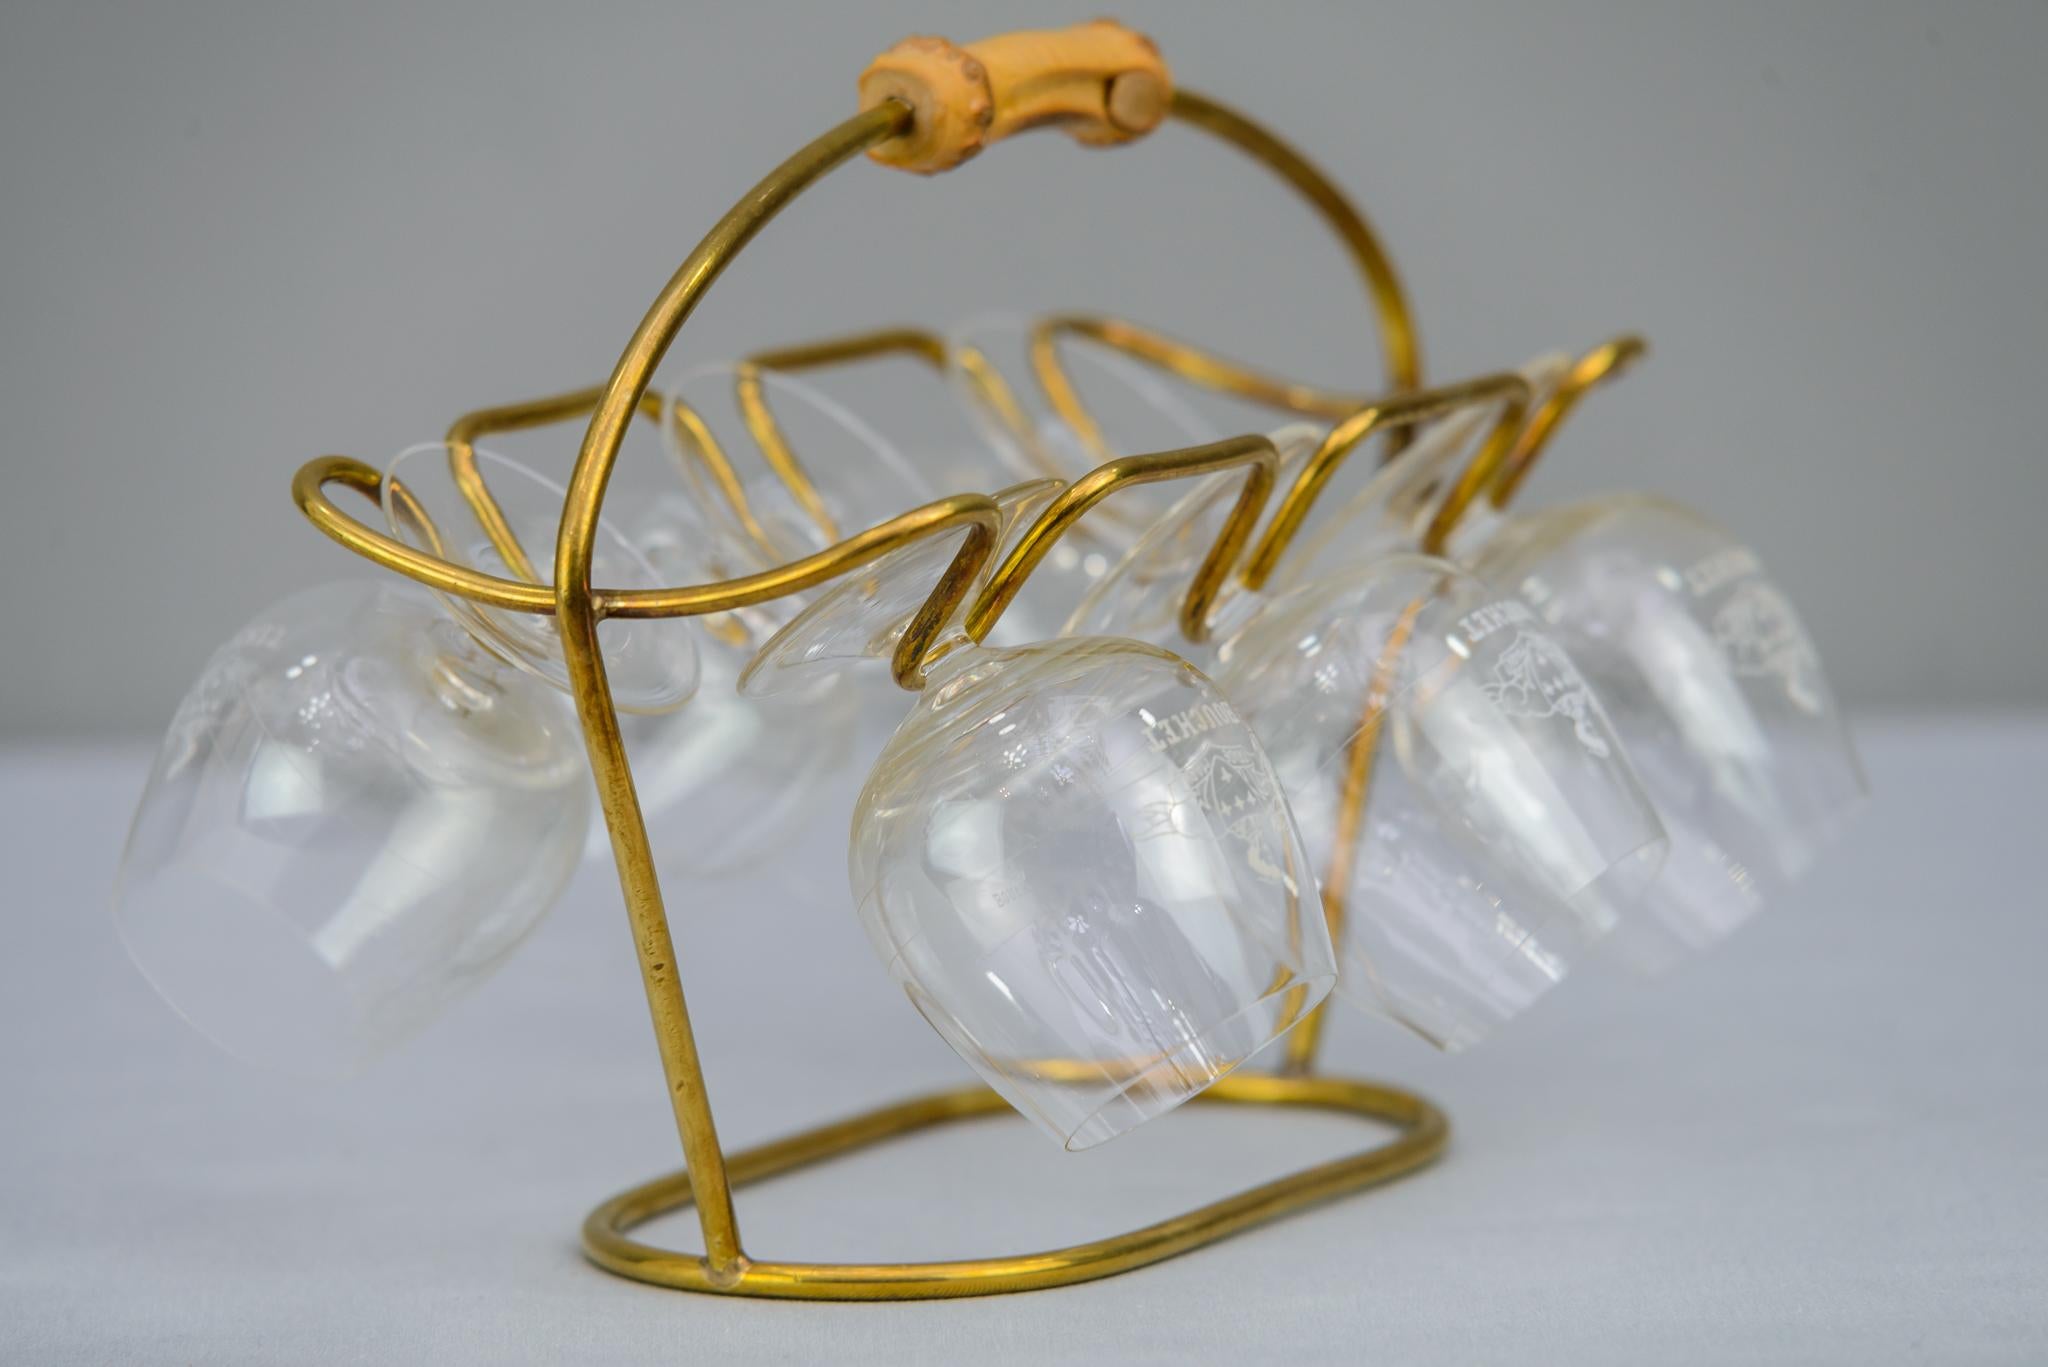 Wine glass holder, circa 1950s
Original condition
Glasses are included.